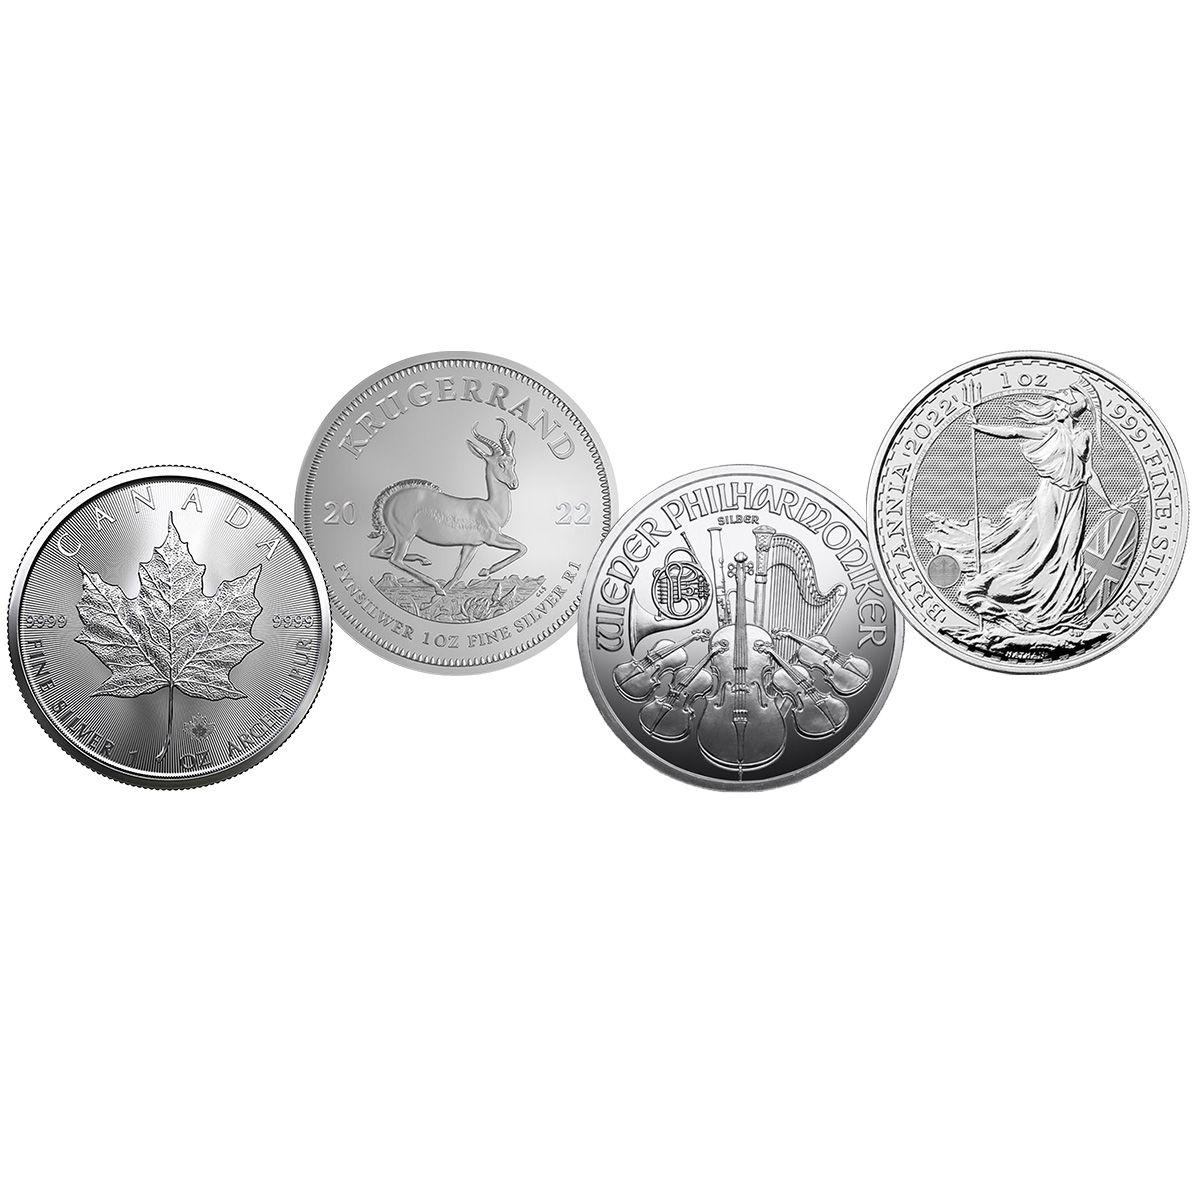 Silbermünzen über Degussa